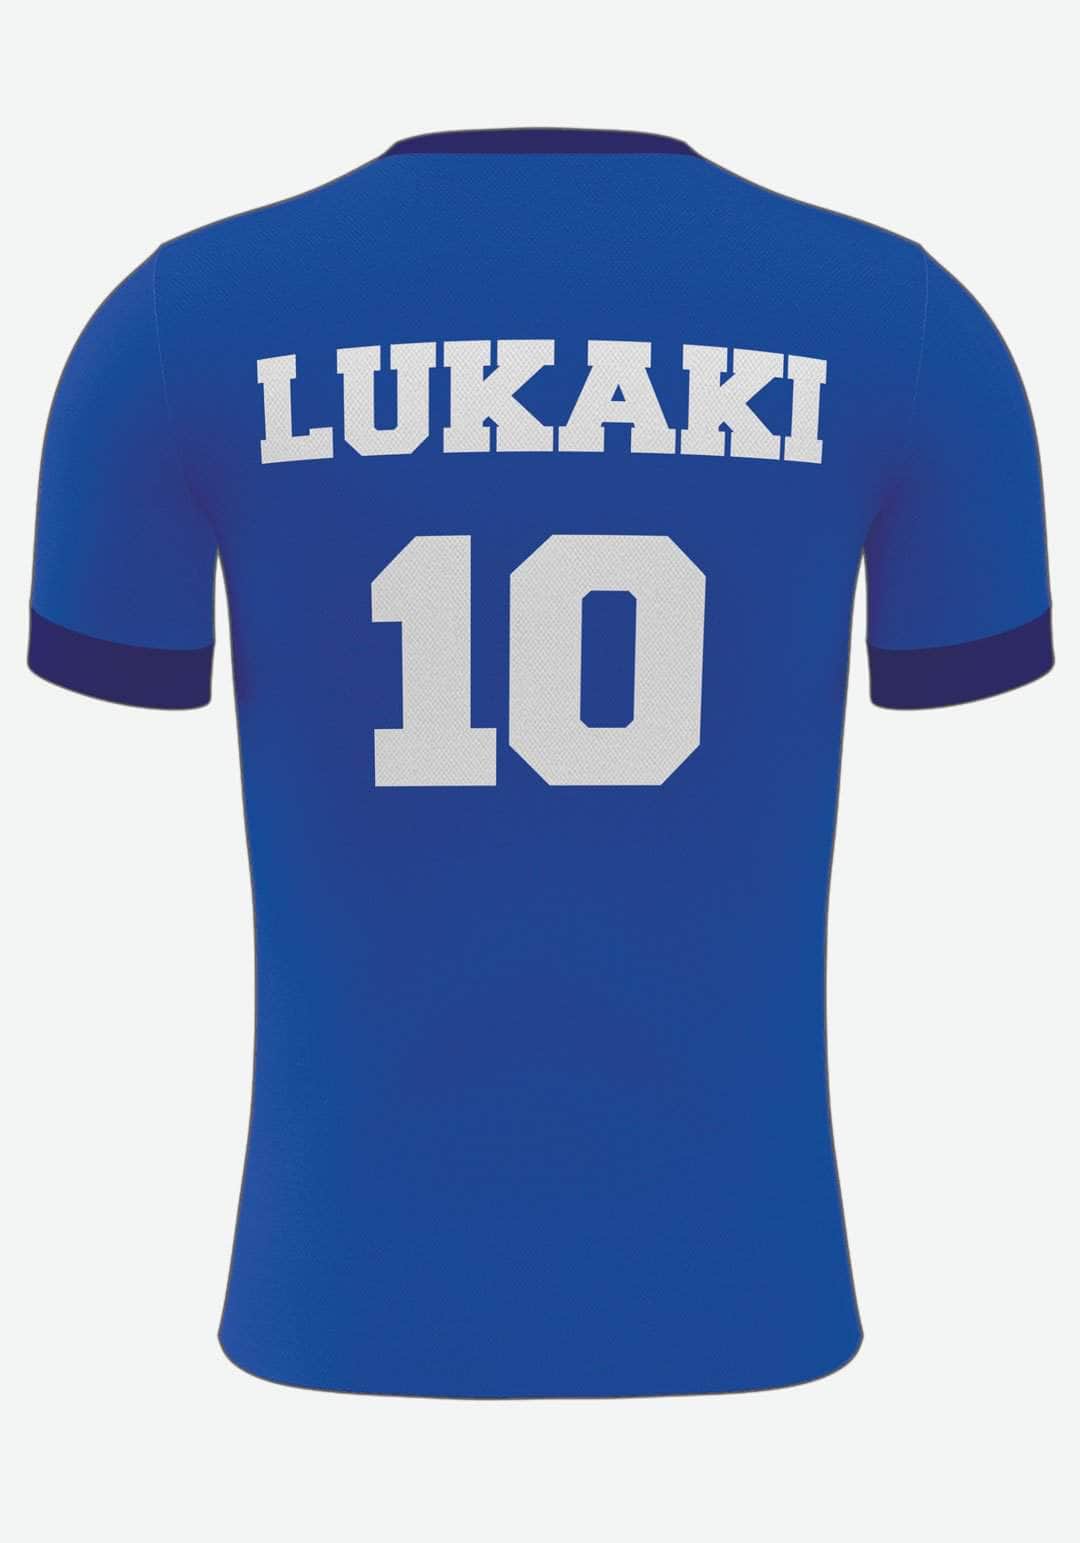 Se Chelsea Fodboldplakat - med eget navn og nummer, 50x70 hos Lukaki.dk